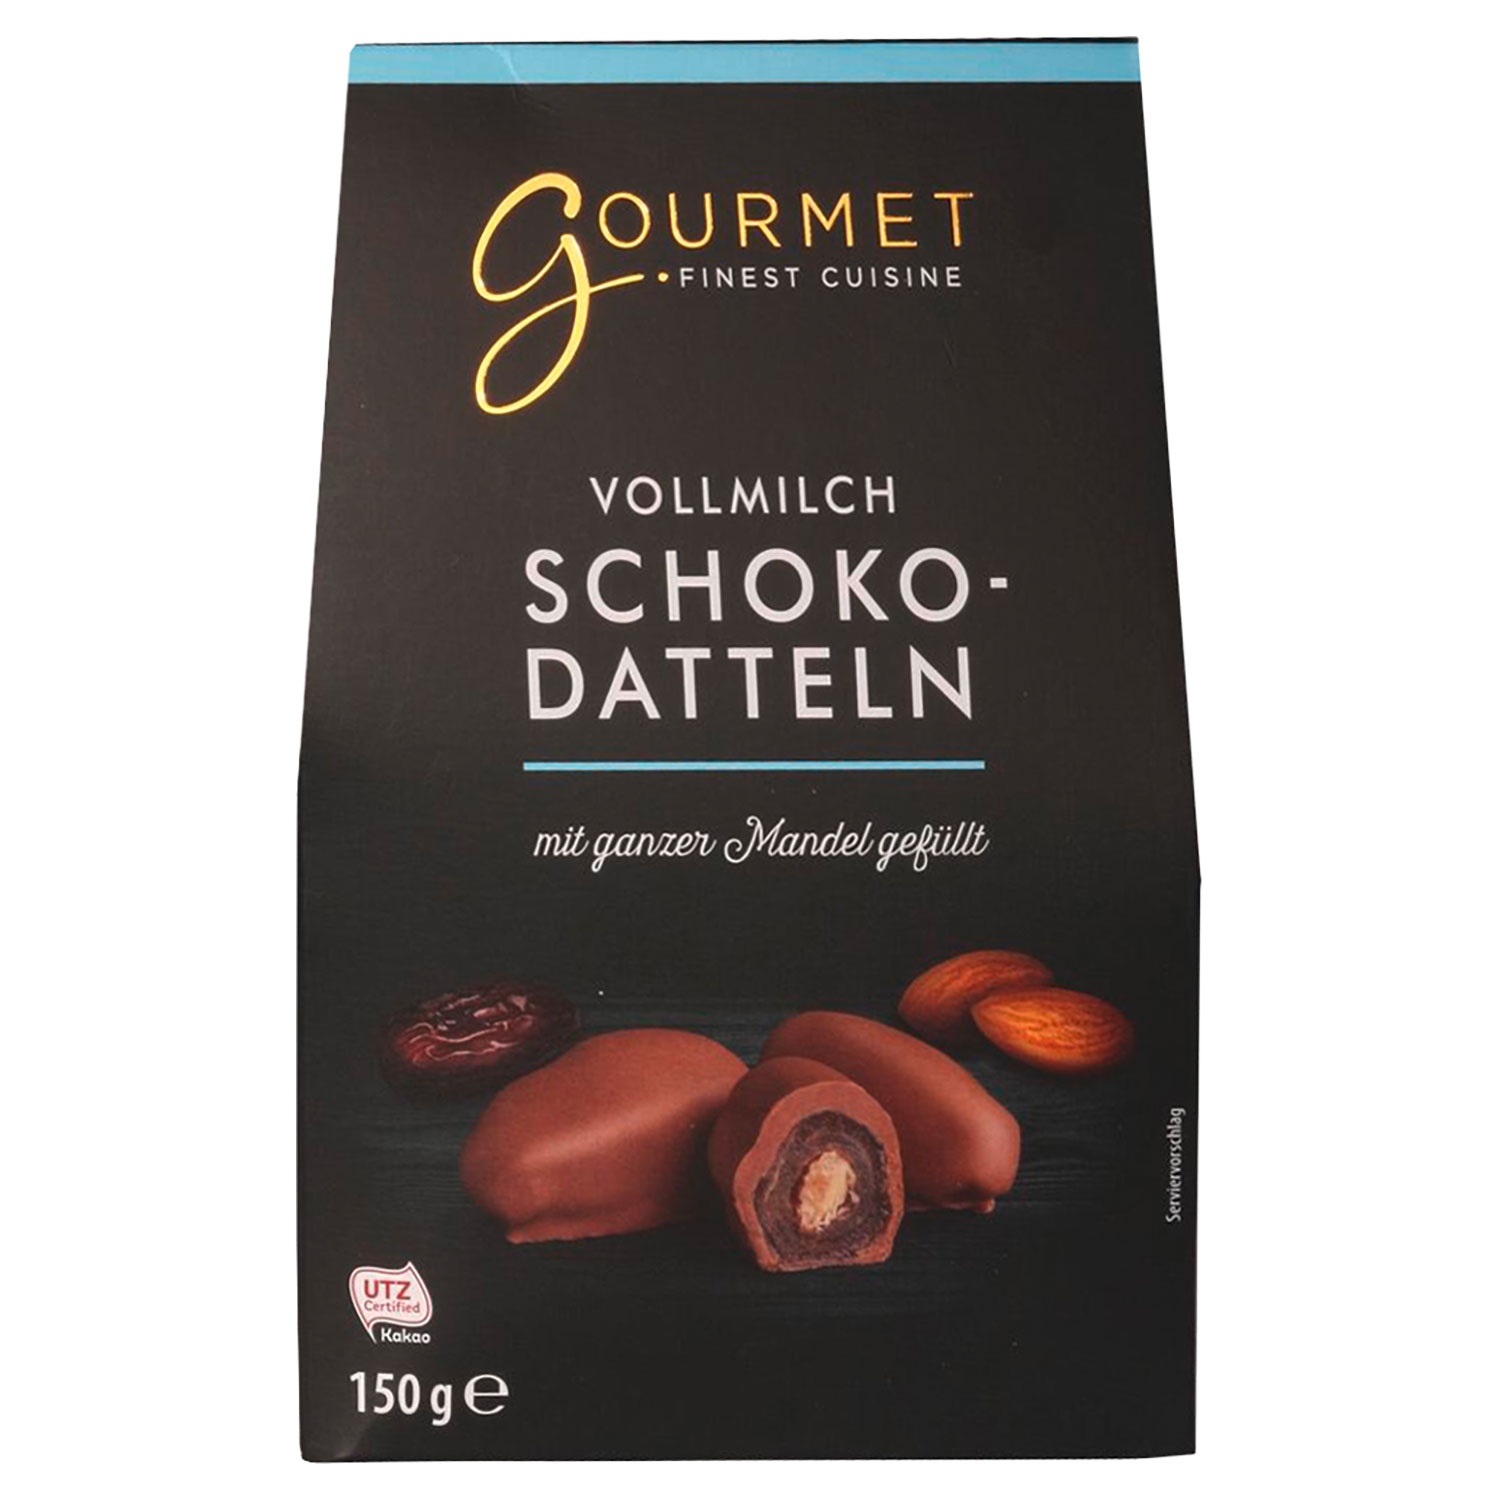 GOURMET FINEST CUISINE Schoko-Datteln 150 g